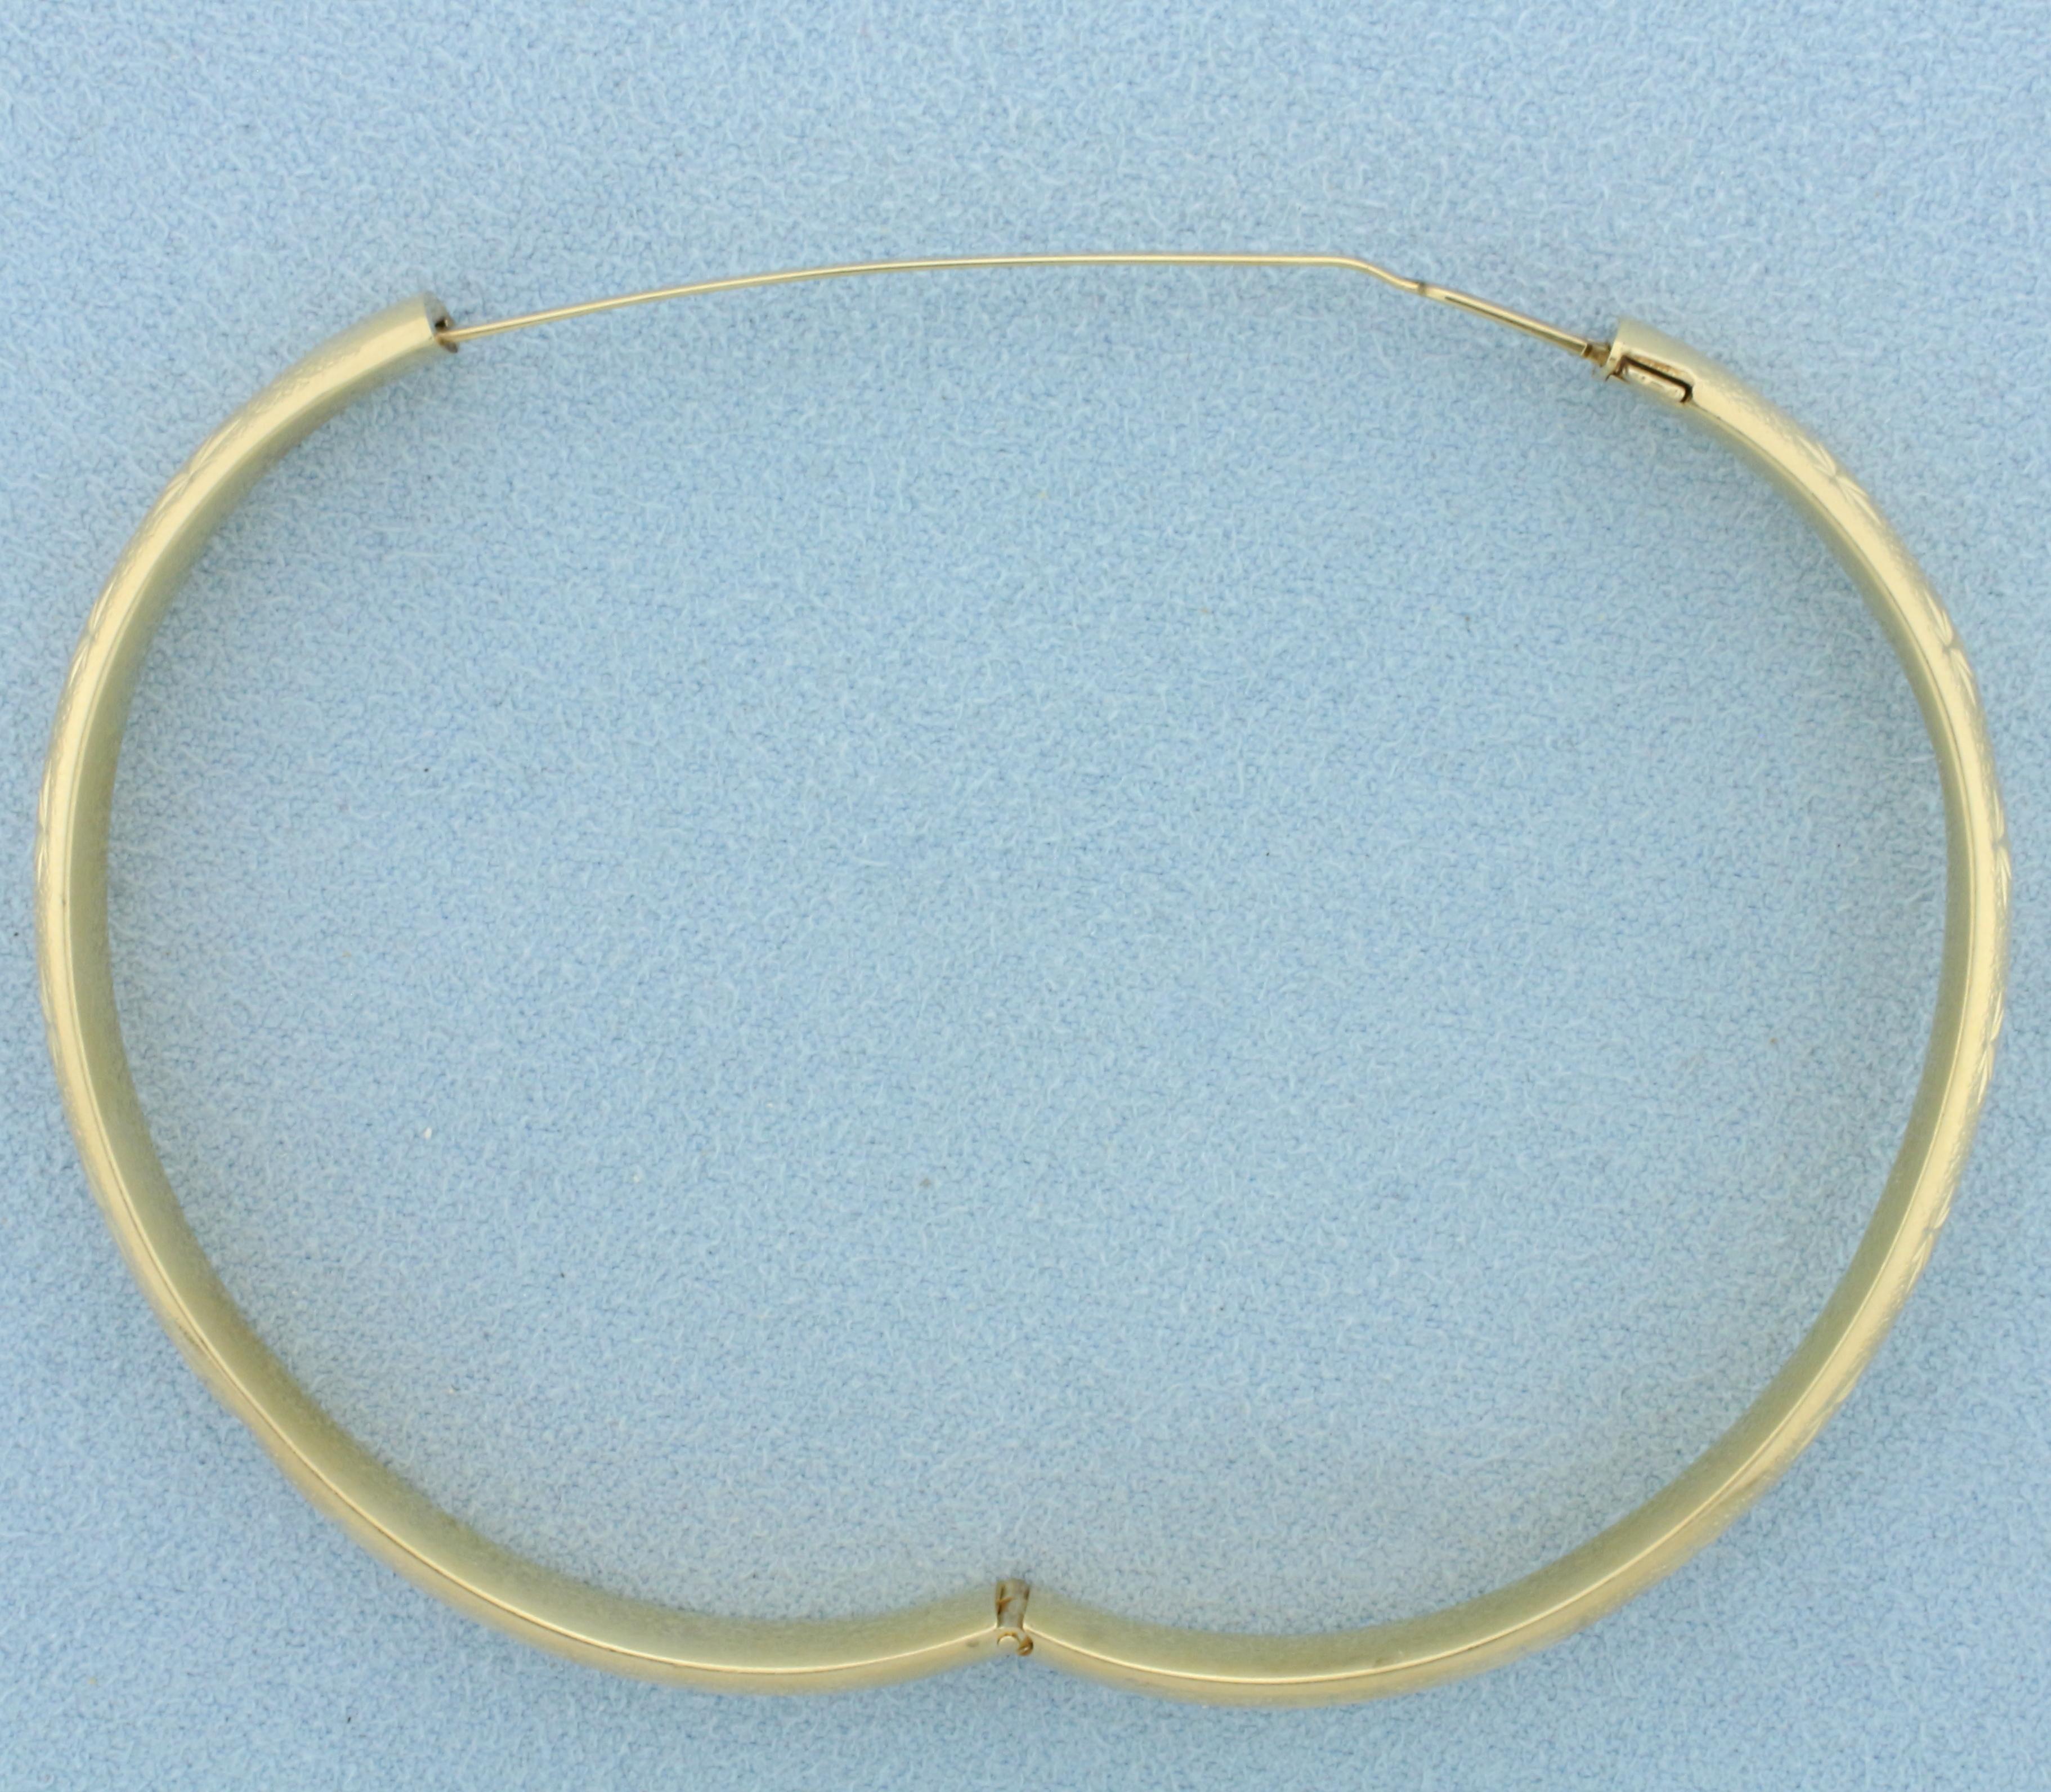 Star Design Bangle Bracelet In 14k Yellow Gold